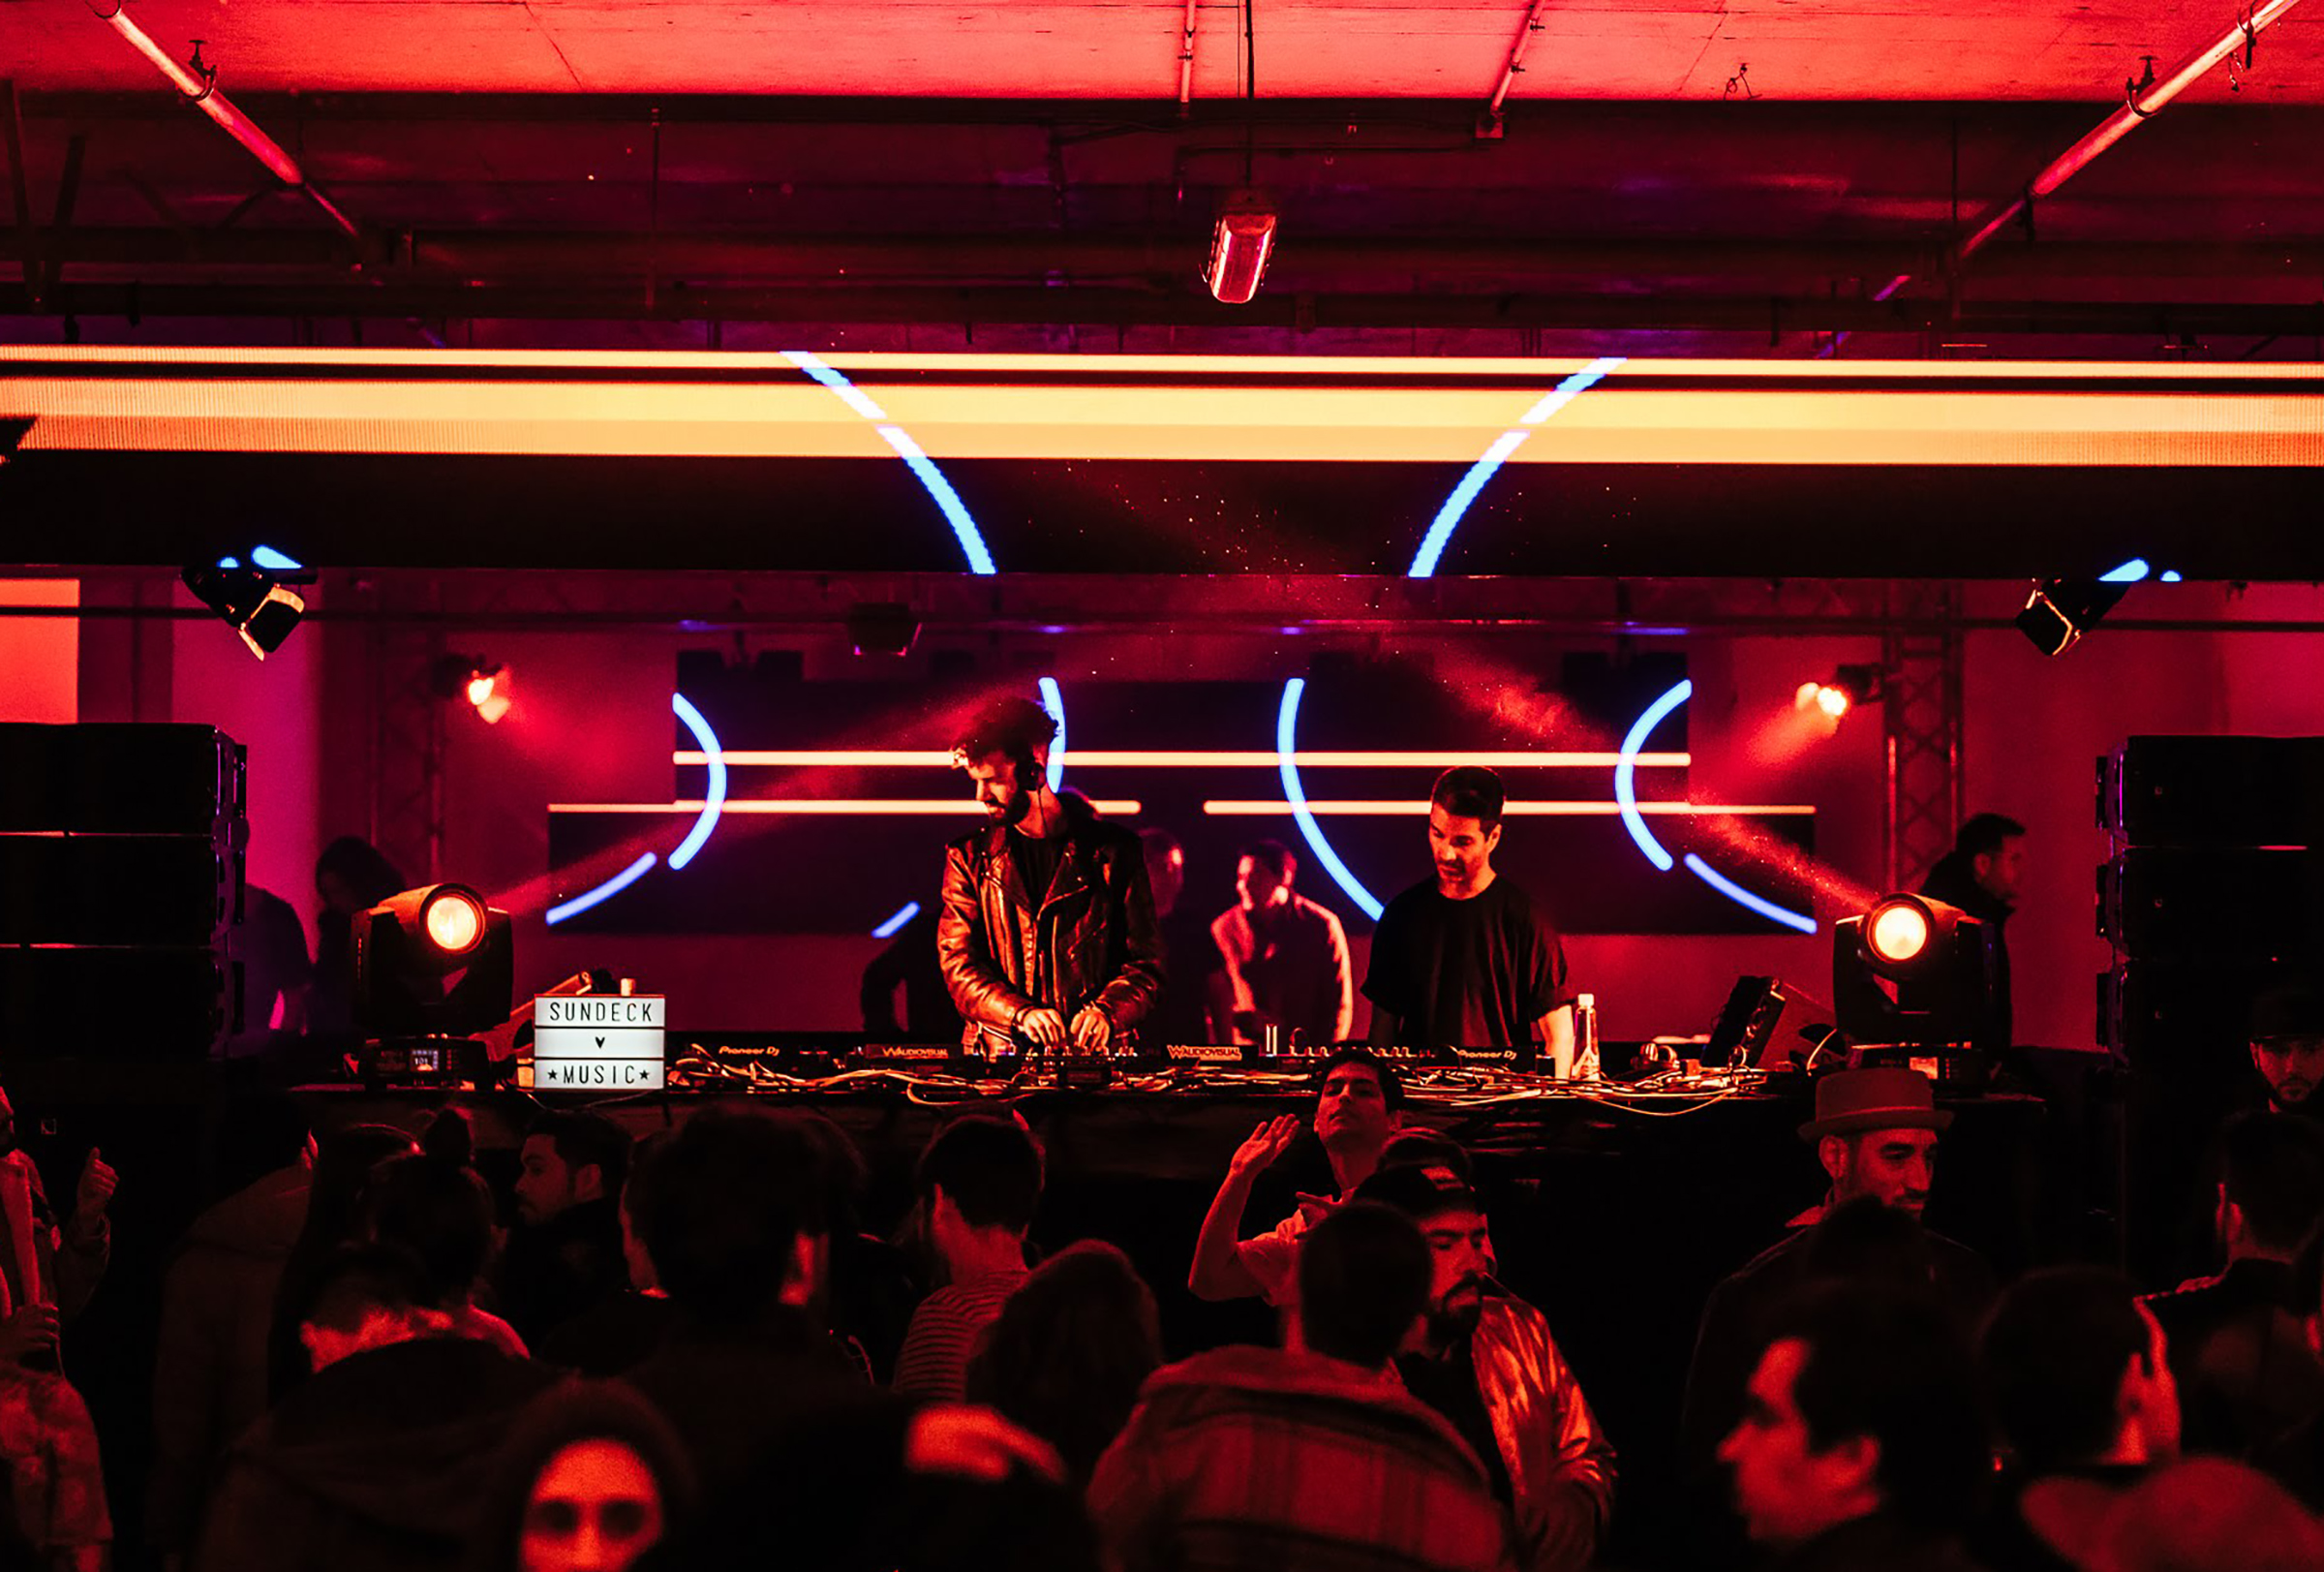 Benjamin Alexander DJ'ing at Sundeck in Santiago, Chile in 2018. (Courtesy Benjamin Alexander)